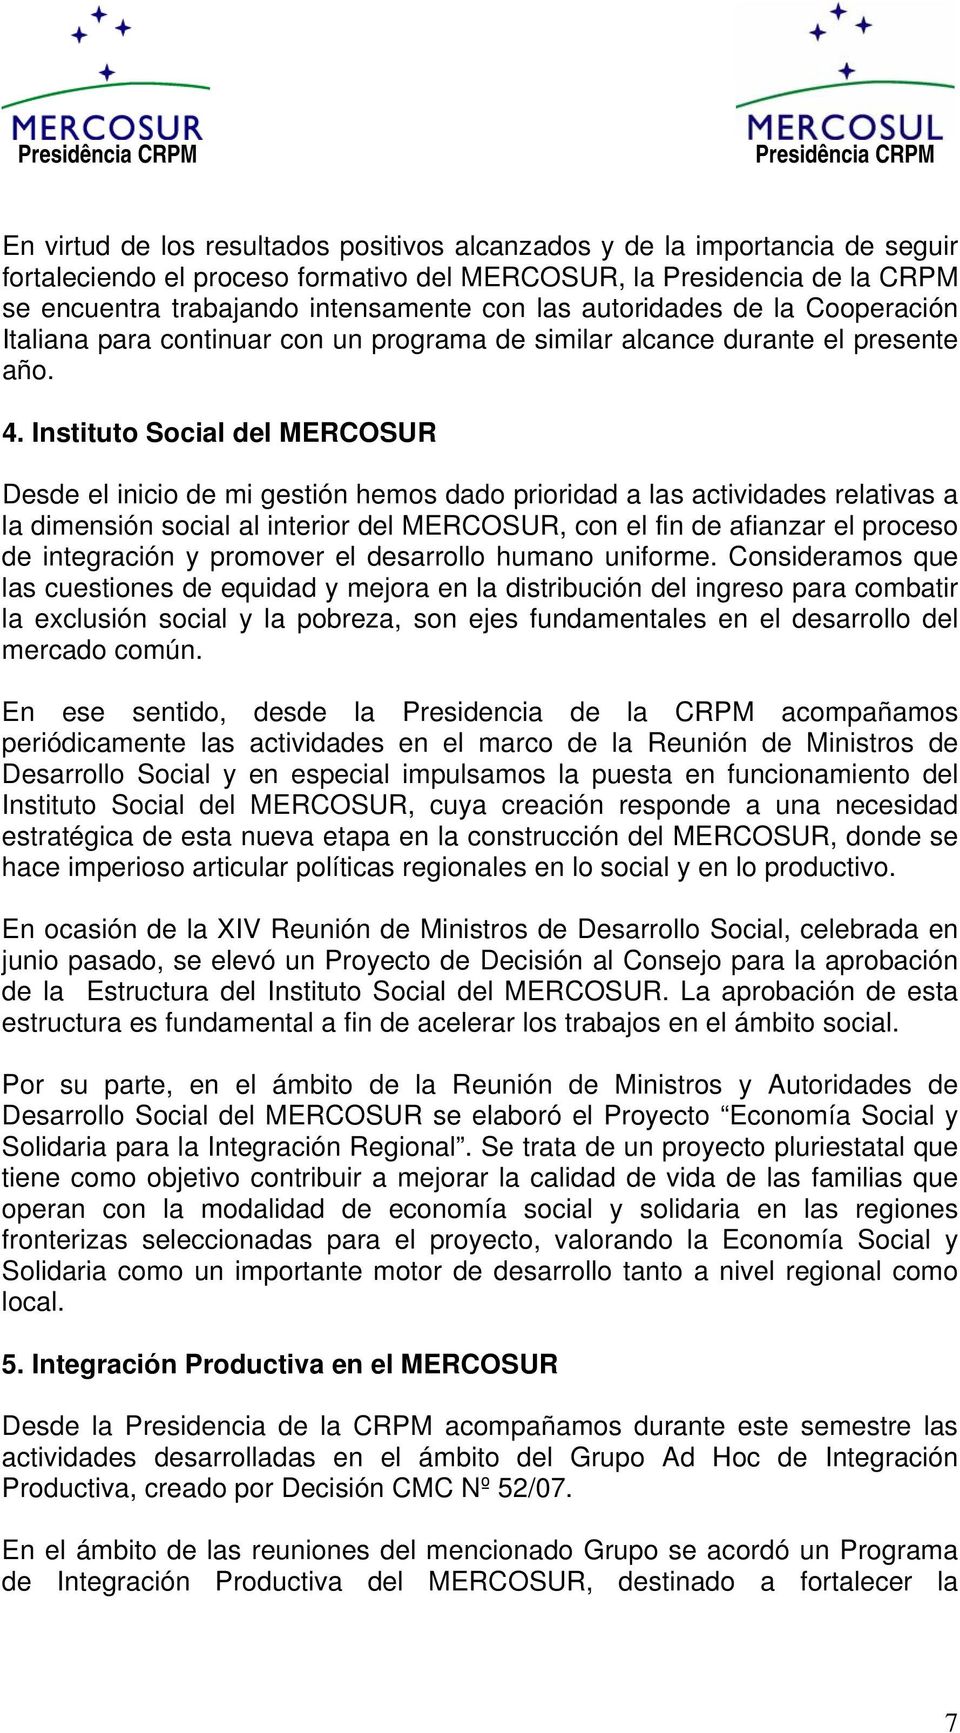 Instituto Social del MERCOSUR Desde el inicio de mi gestión hemos dado prioridad a las actividades relativas a la dimensión social al interior del MERCOSUR, con el fin de afianzar el proceso de